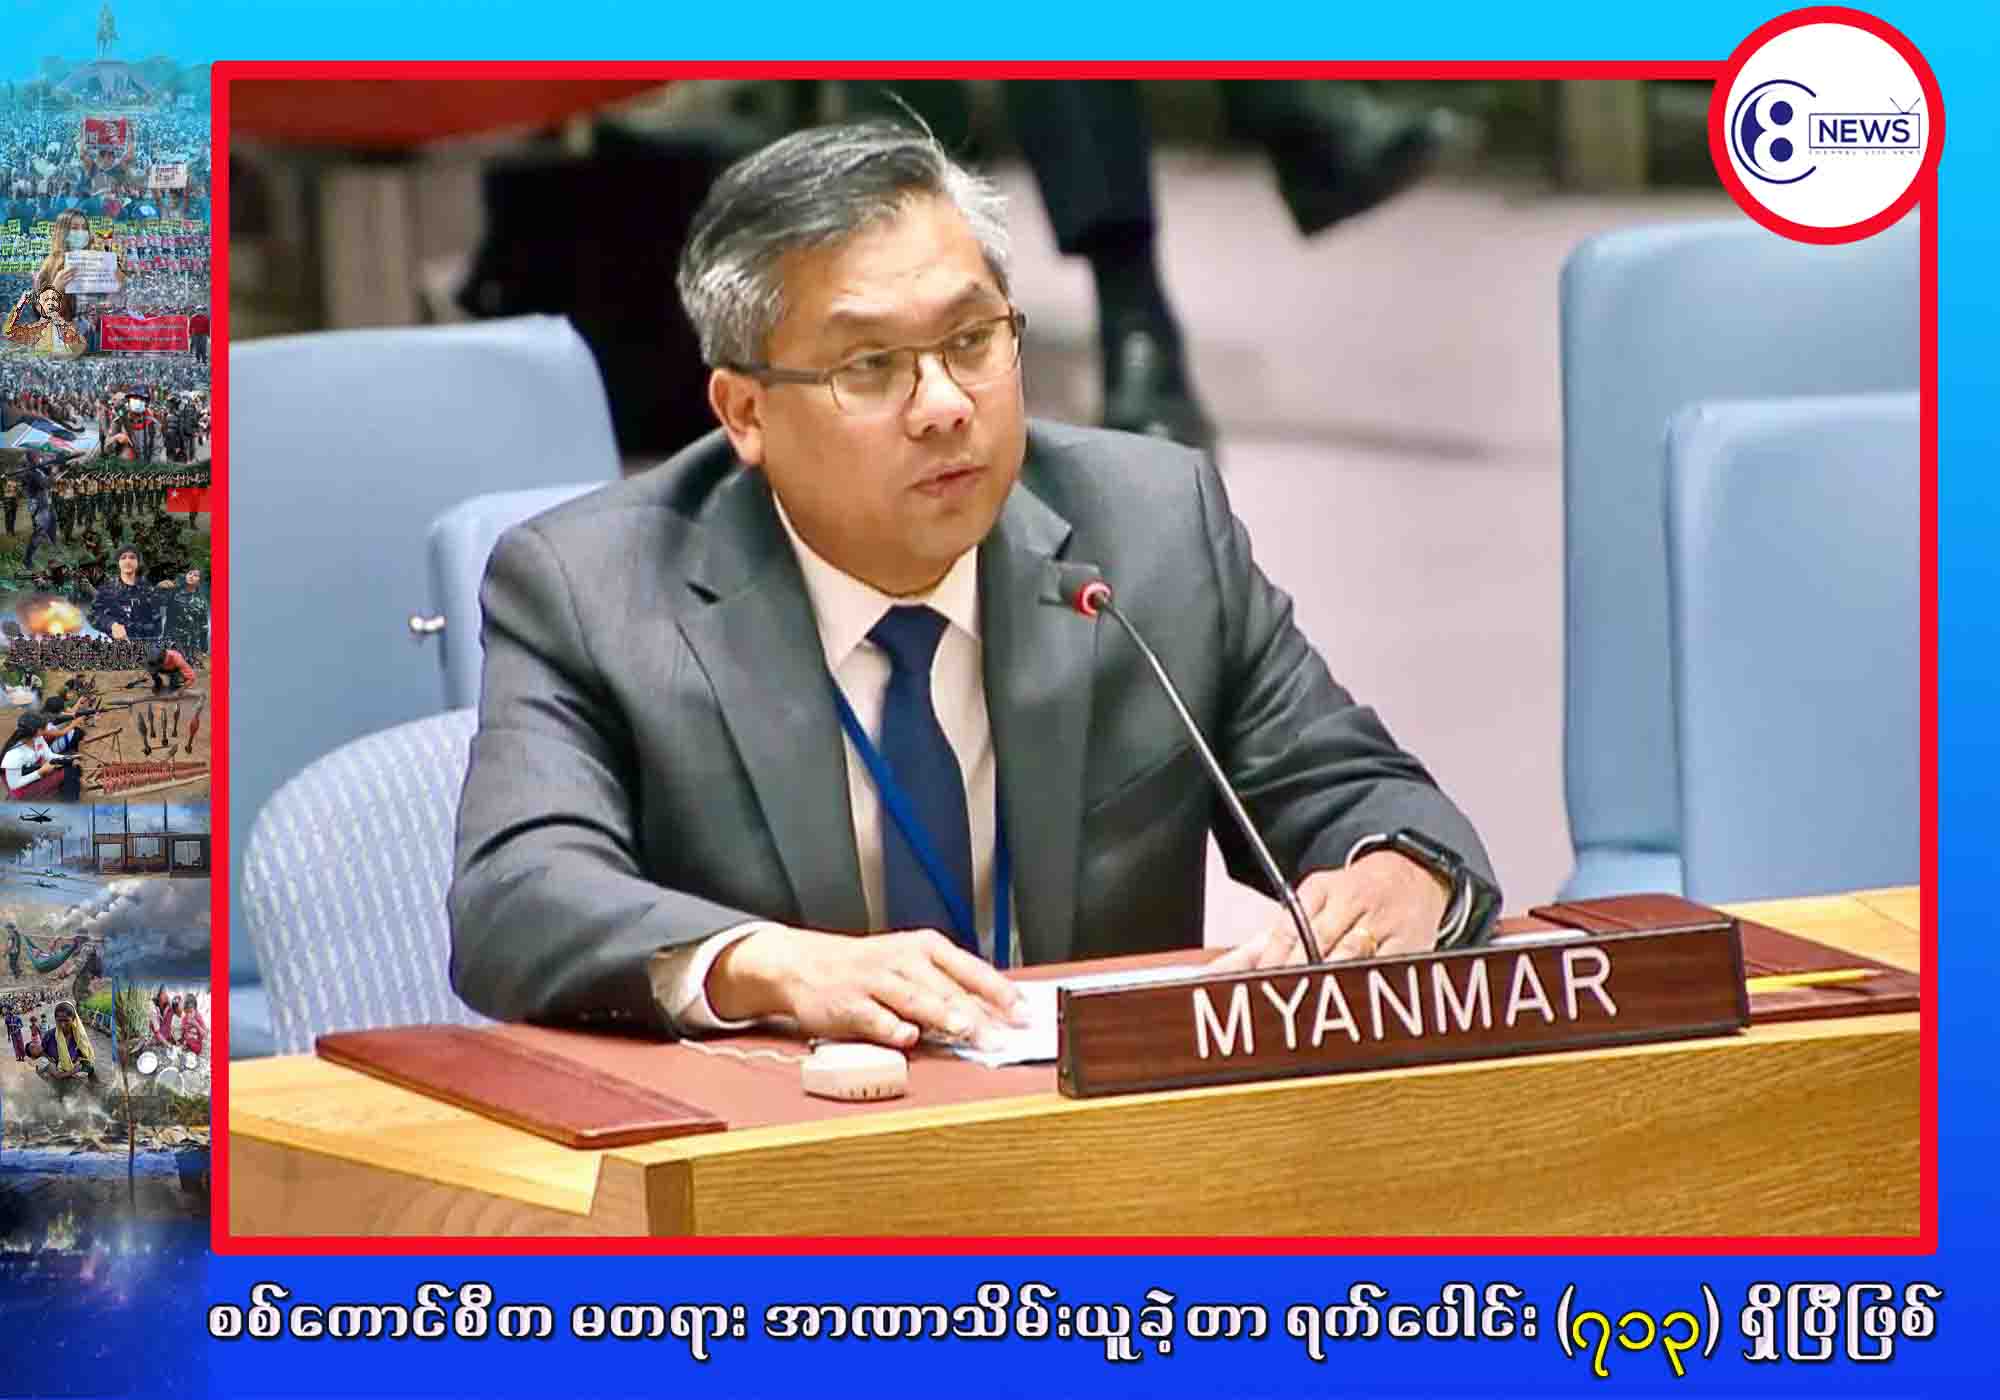 လုံခြုံရေးကောင်စီအနေနဲ့ မြန်မာနိုင်ငံရဲ့ တရားဥပေဒစိုးမိုးရေးကို လုပ်ဆောင်တဲ့နေရာမှာ ထူးခြားတဲ့ အခွင့်အရေး လက်ဝယ်ရှိတယ်လို့ ကုလသမဂ္ဂဆိုင်ရာ မြန်မာအမြဲတမ်းကိုယ်စားလှယ် သံအမတ်ကြီး ထောက်ပြ